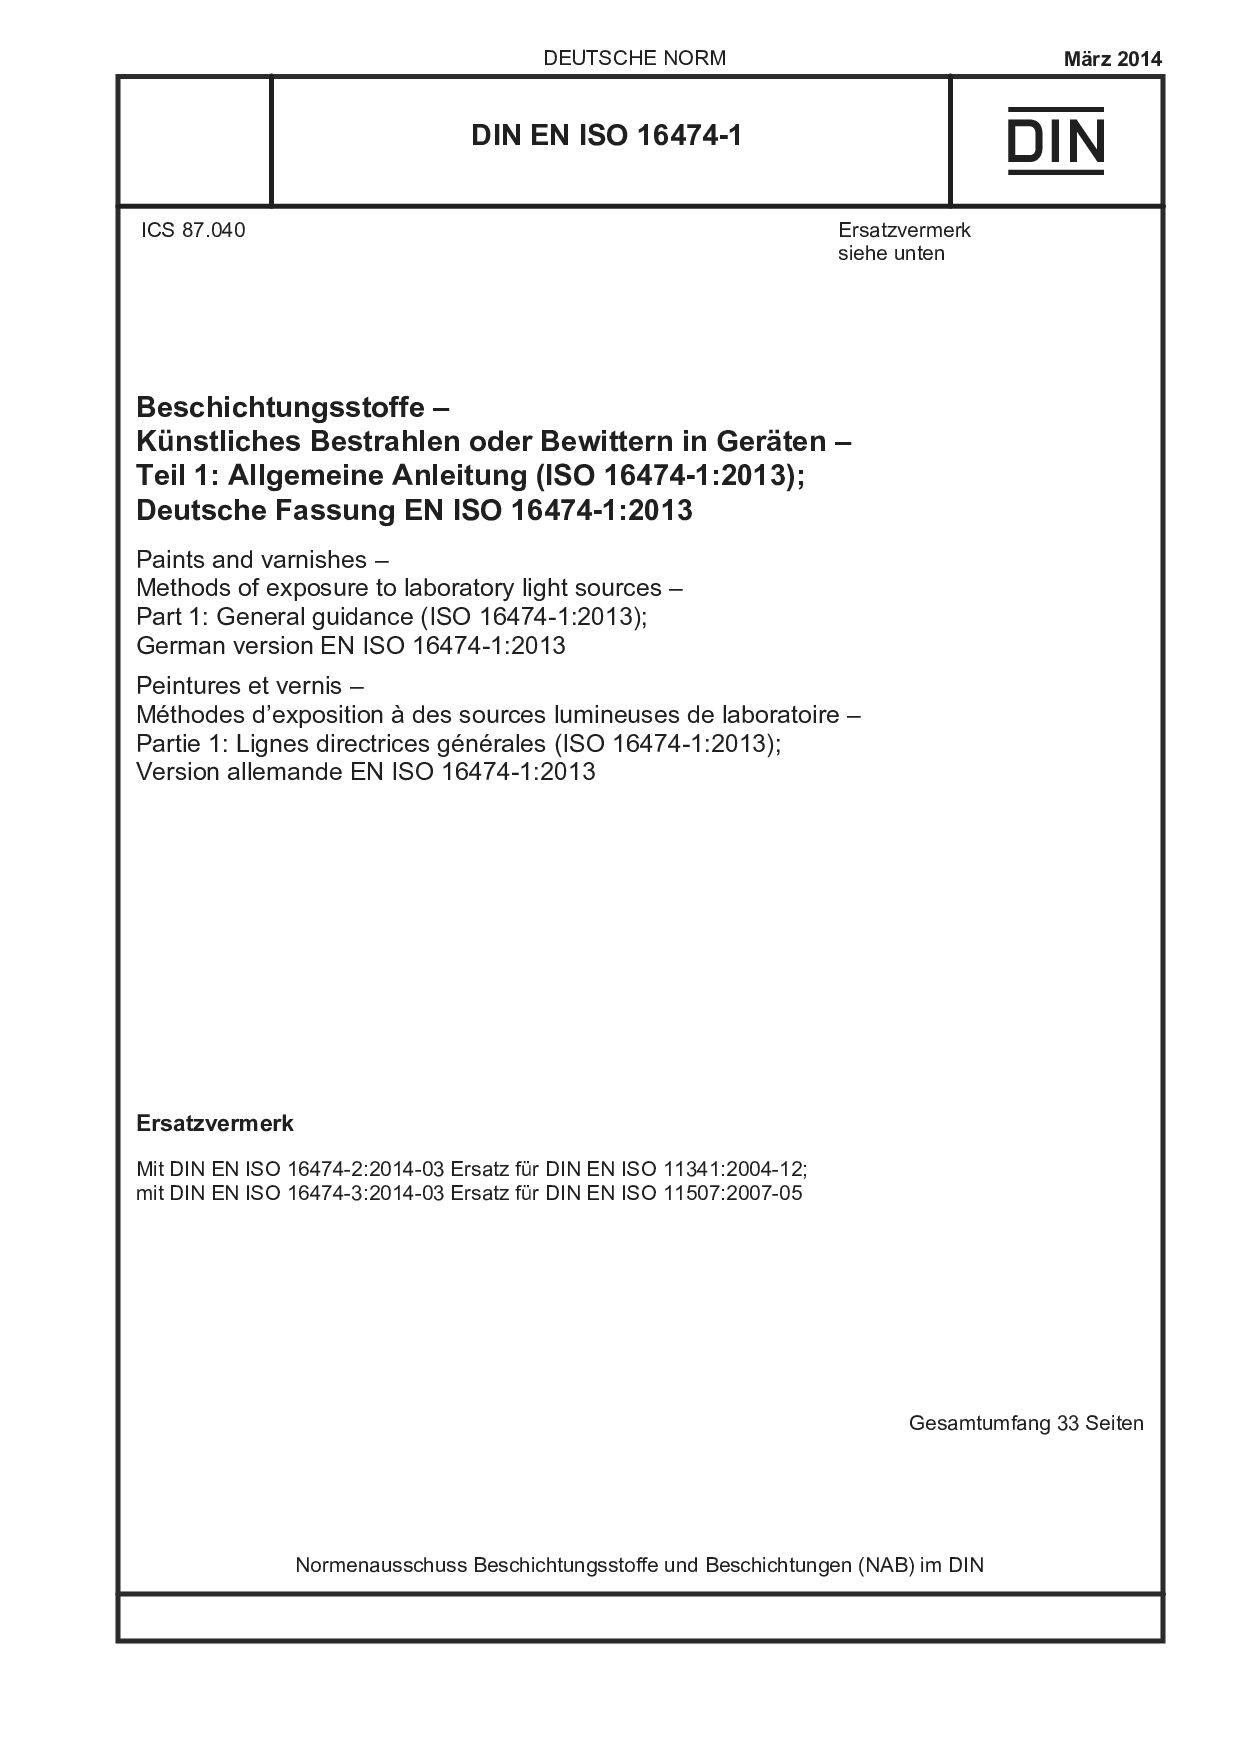 DIN EN ISO 16474-1:2014